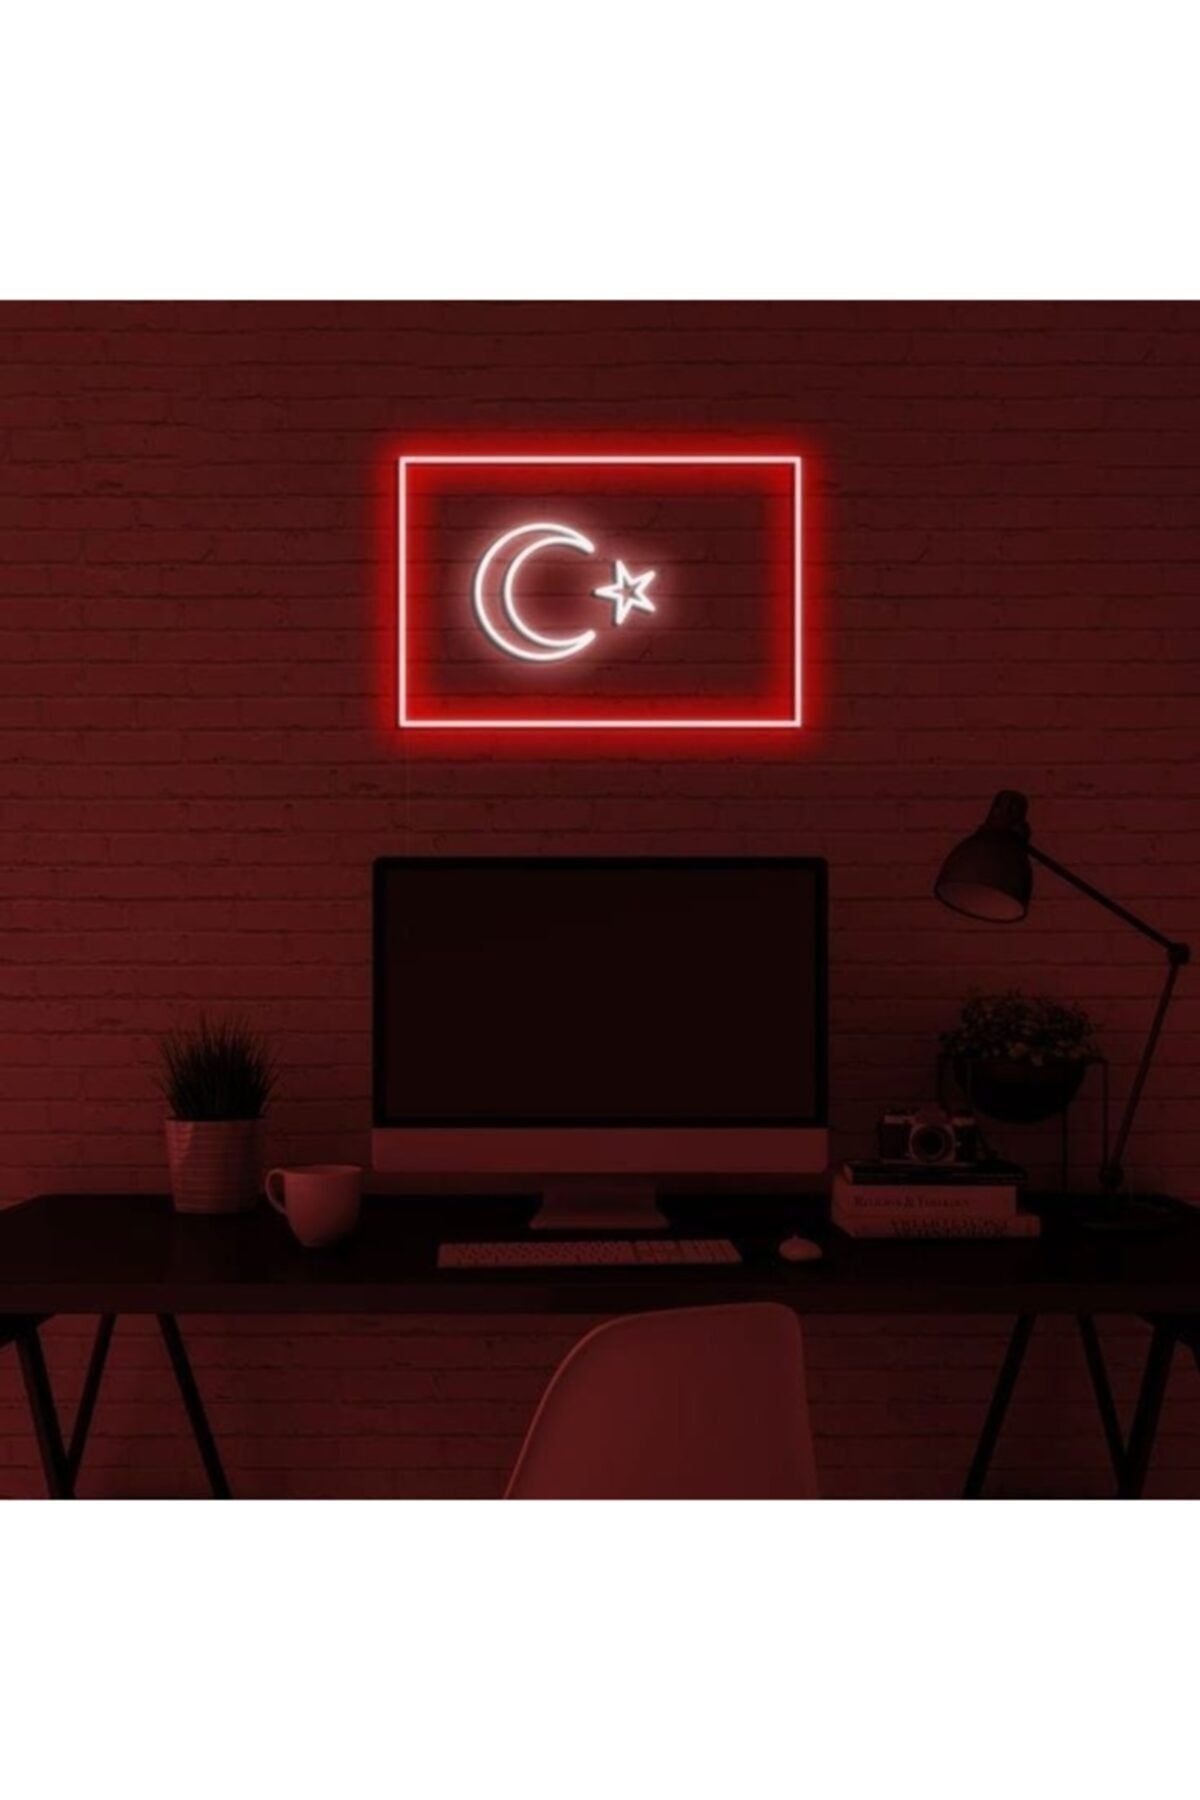 NeonSpectral "türk Bayrağı" Neon Led Tabela